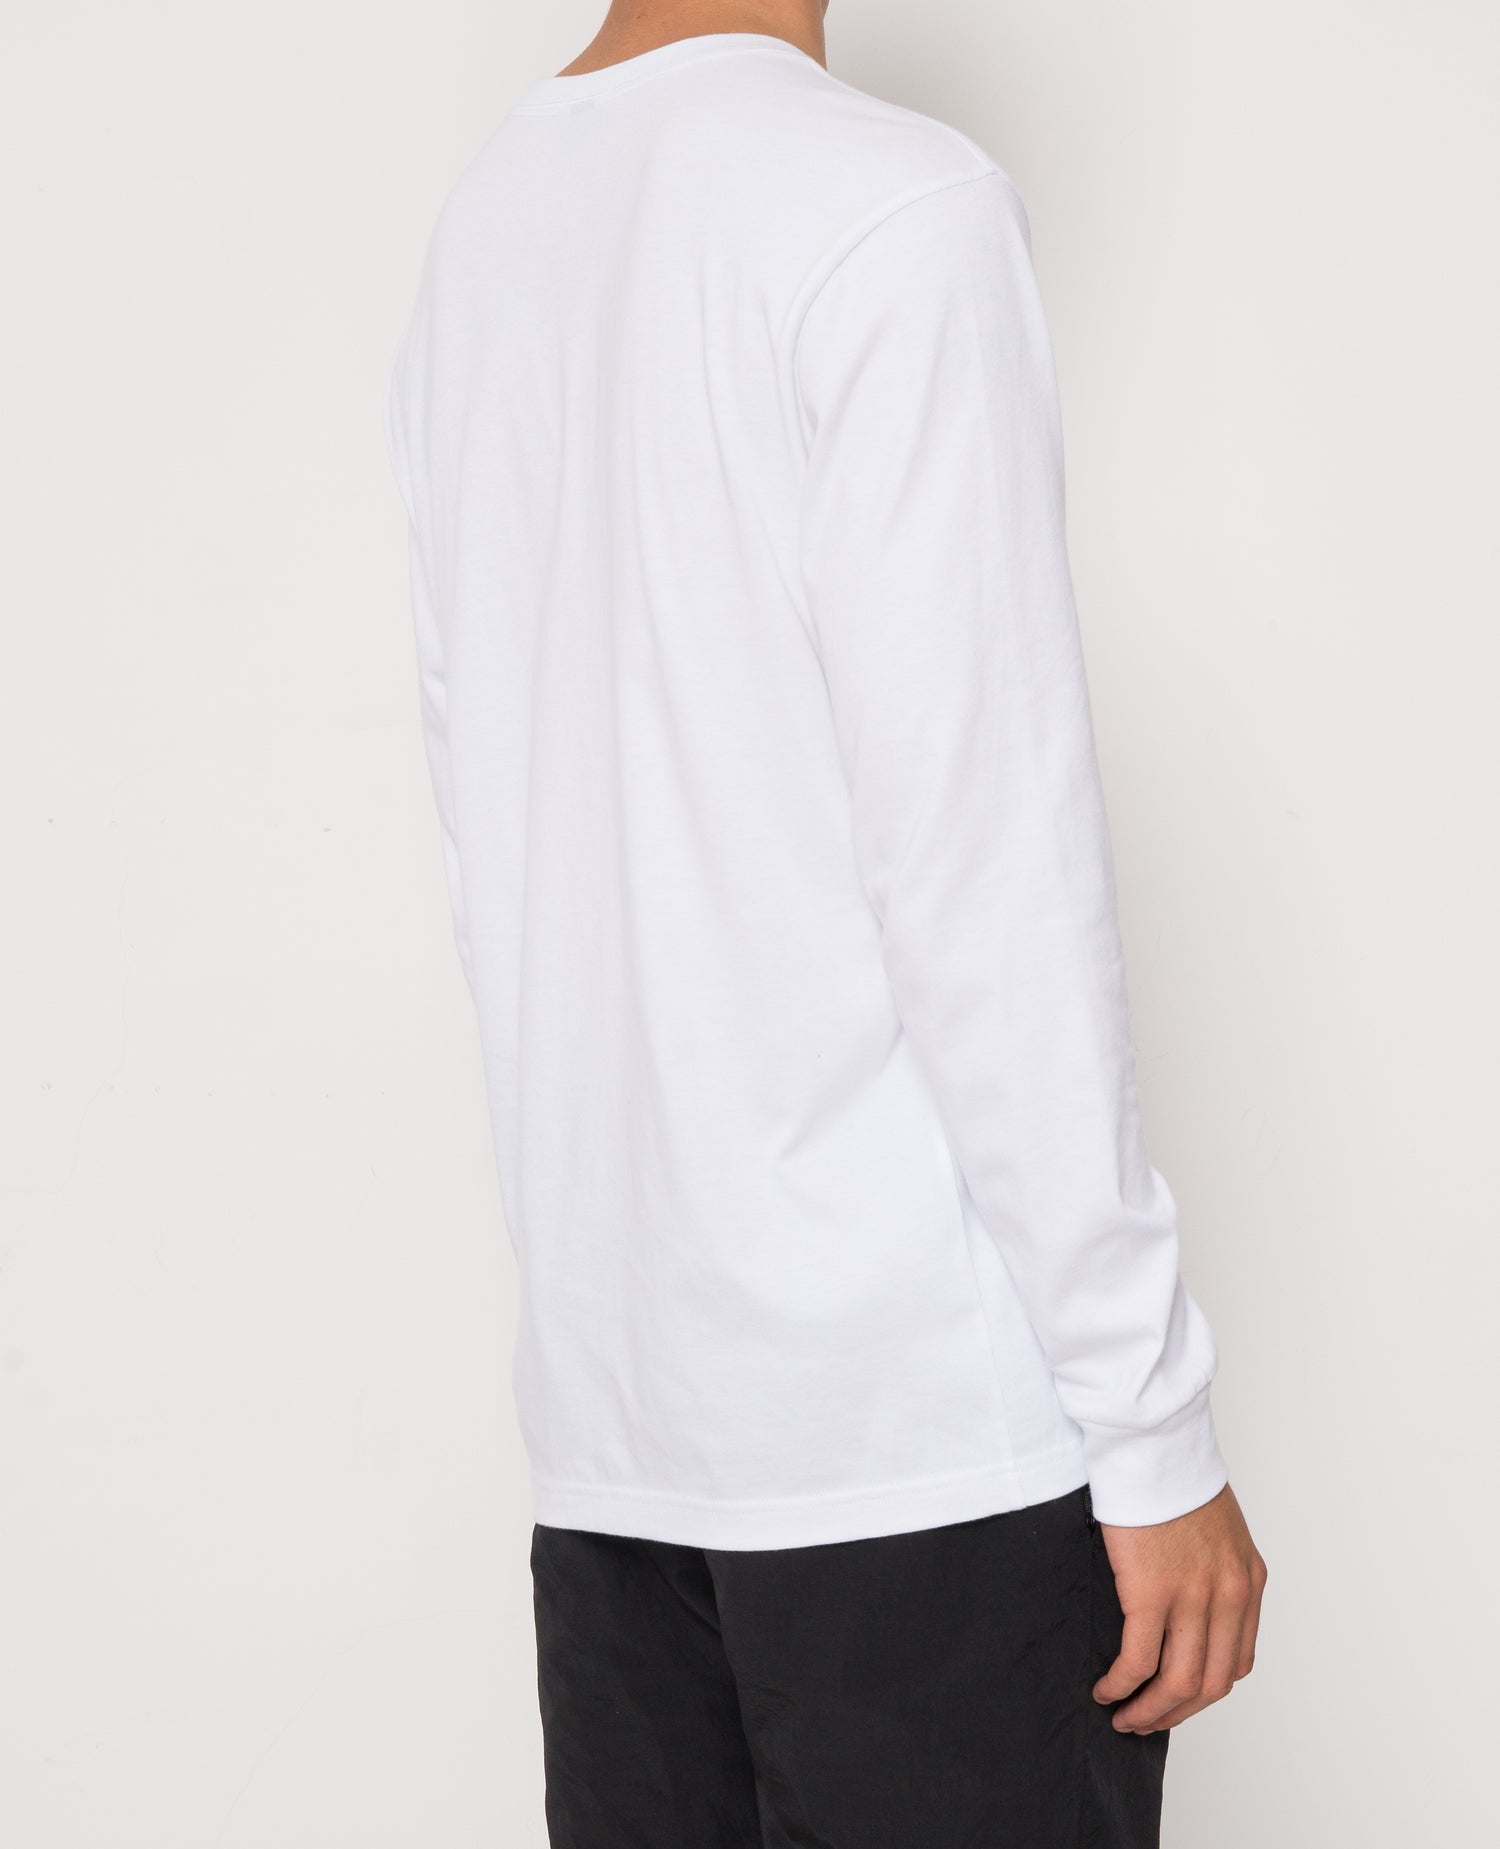 Patta Basic Longsleeve T-Shirt (White)